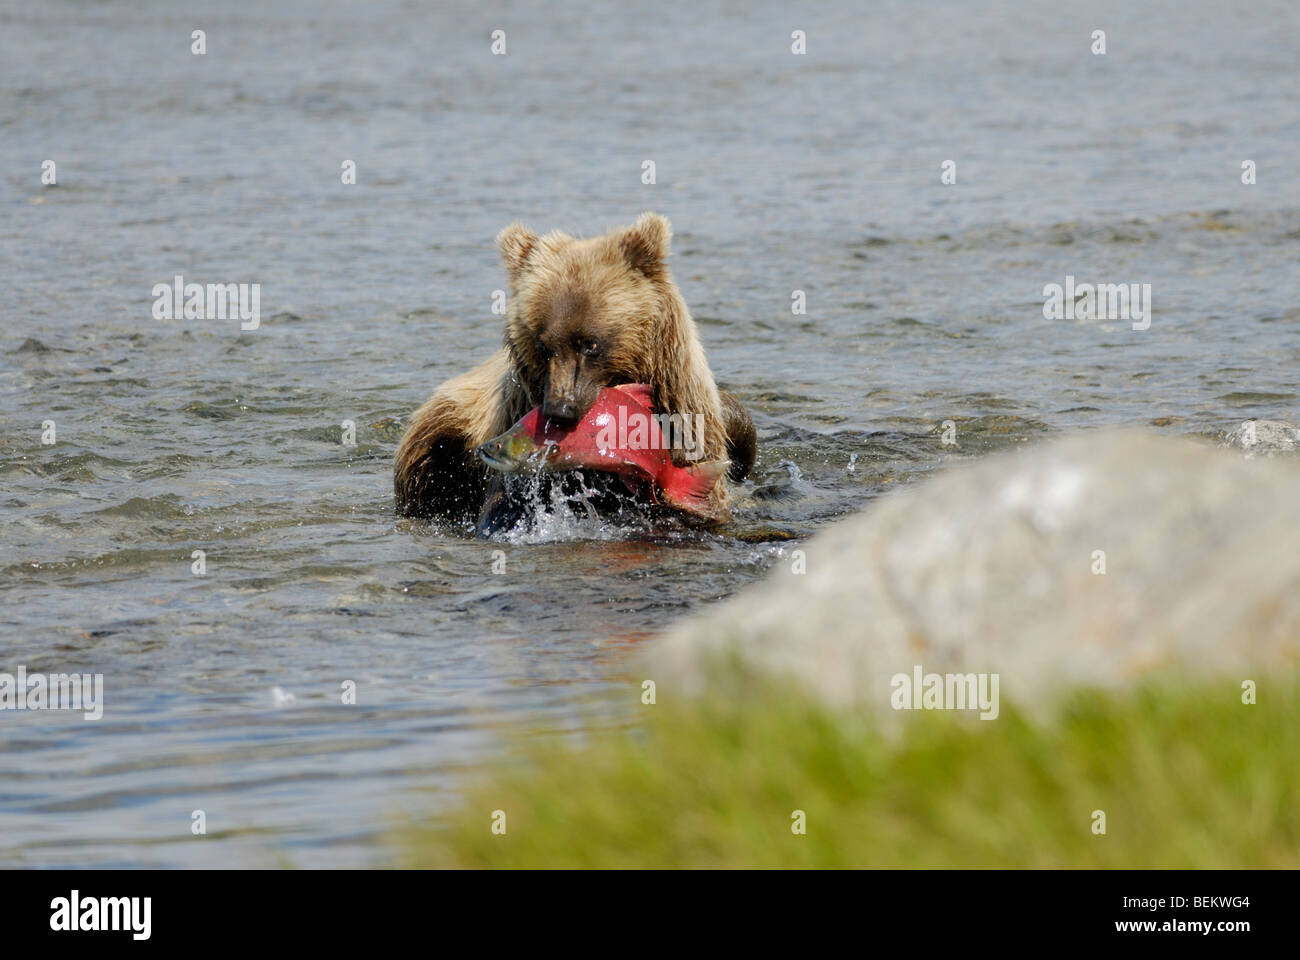 Brown bear, grizzly bear, Ursus arctos, eating a salmon, Katmai National Park, Alaska Stock Photo